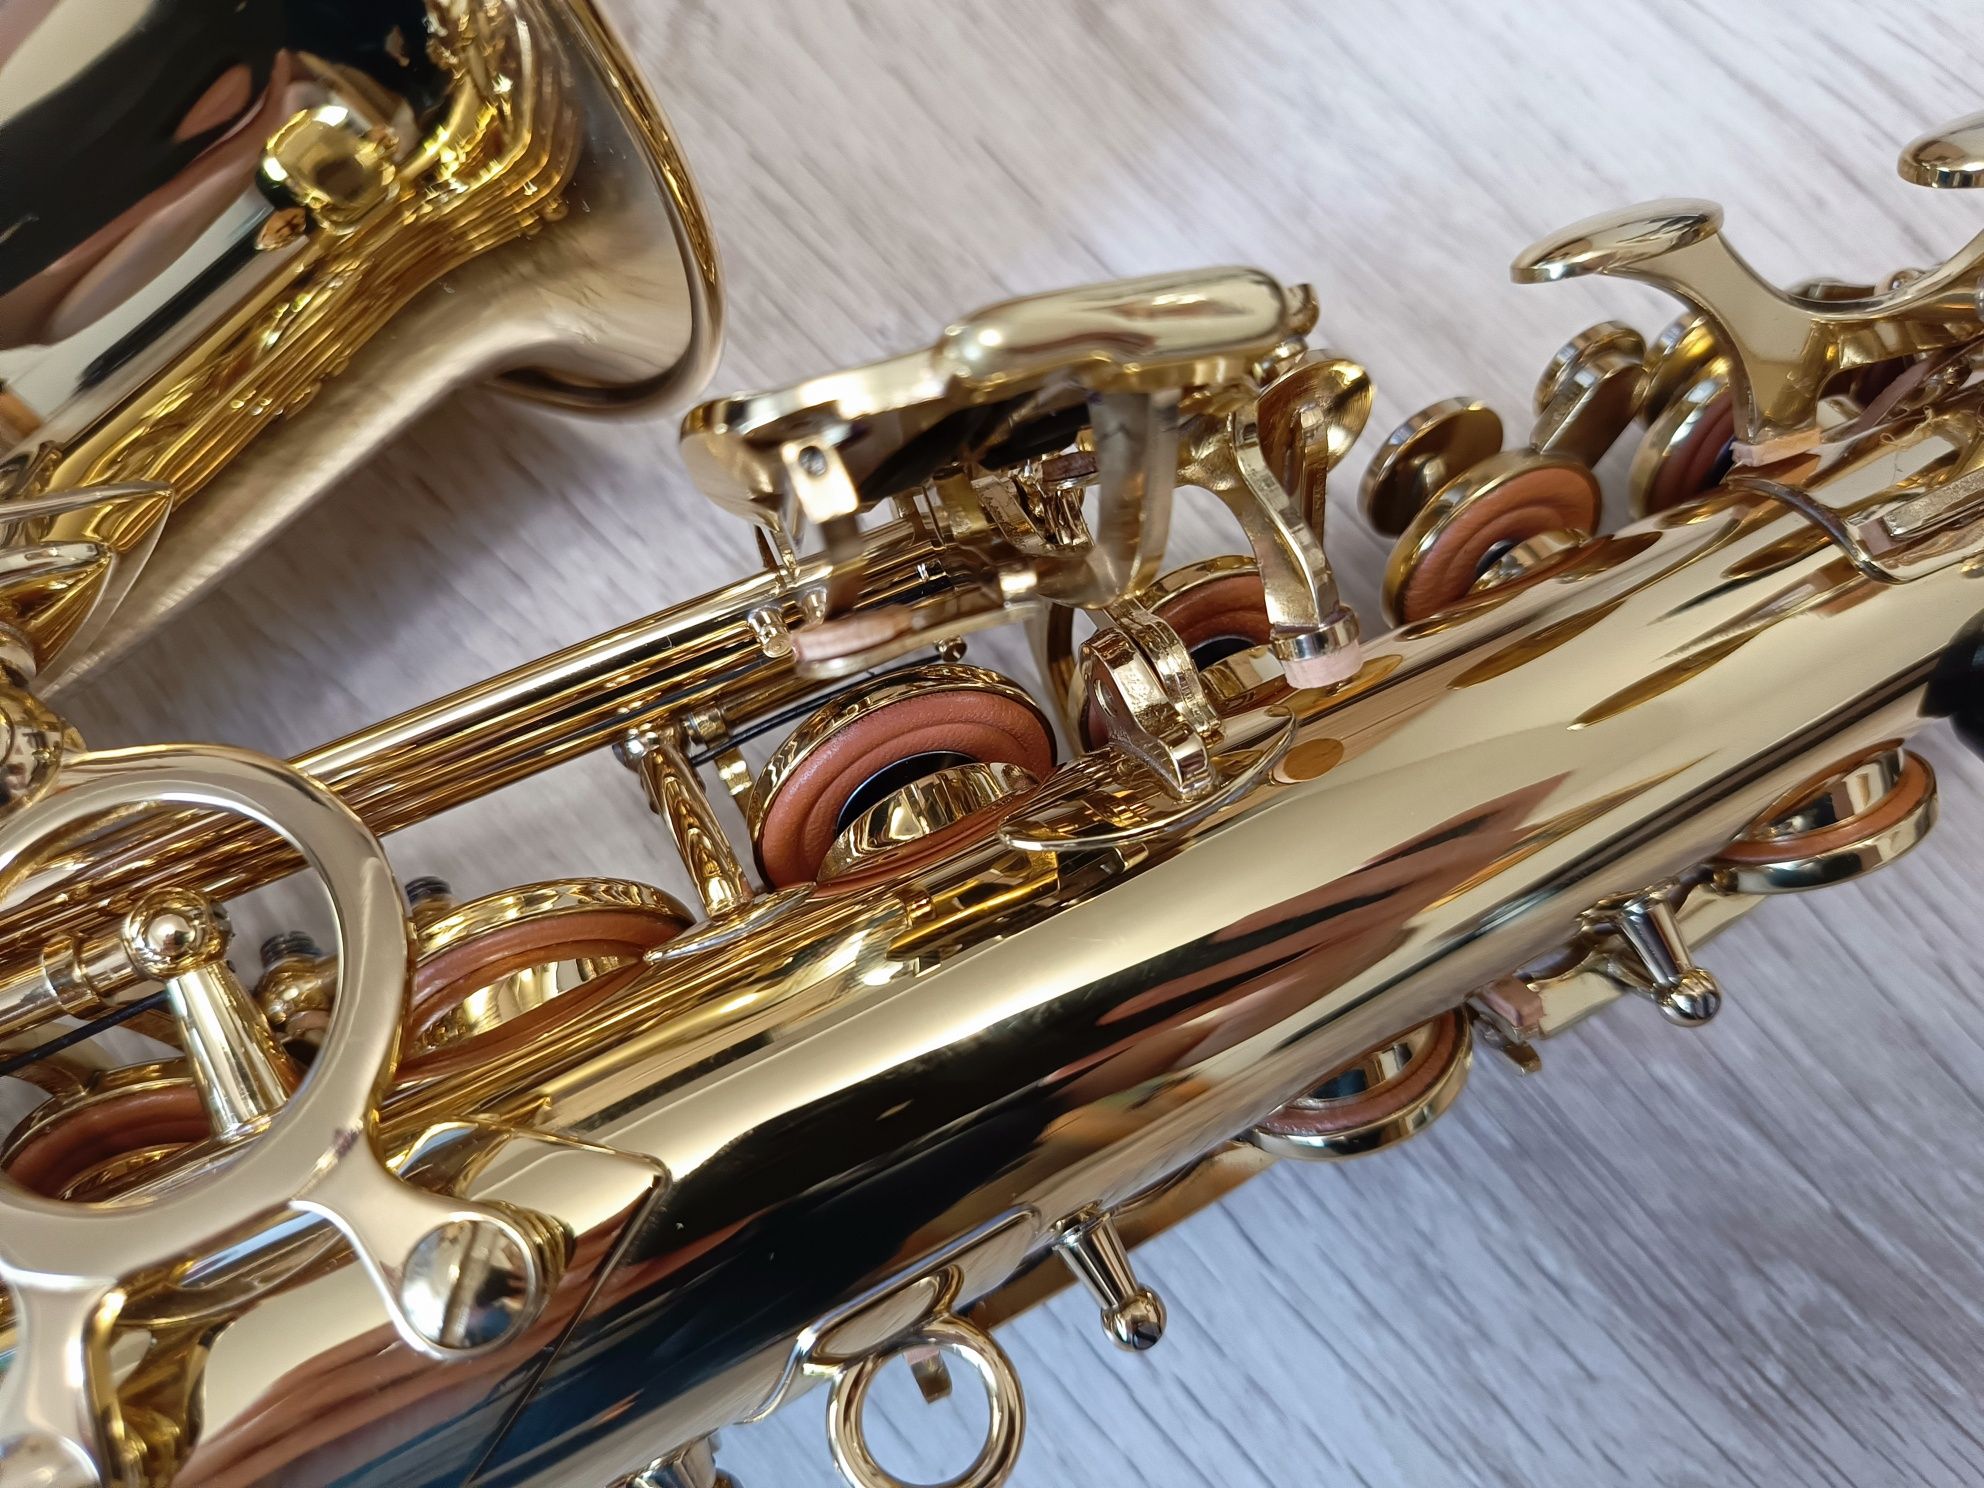 Saksofon altowy Yoshino V12 w pieknym zlotym lakierze